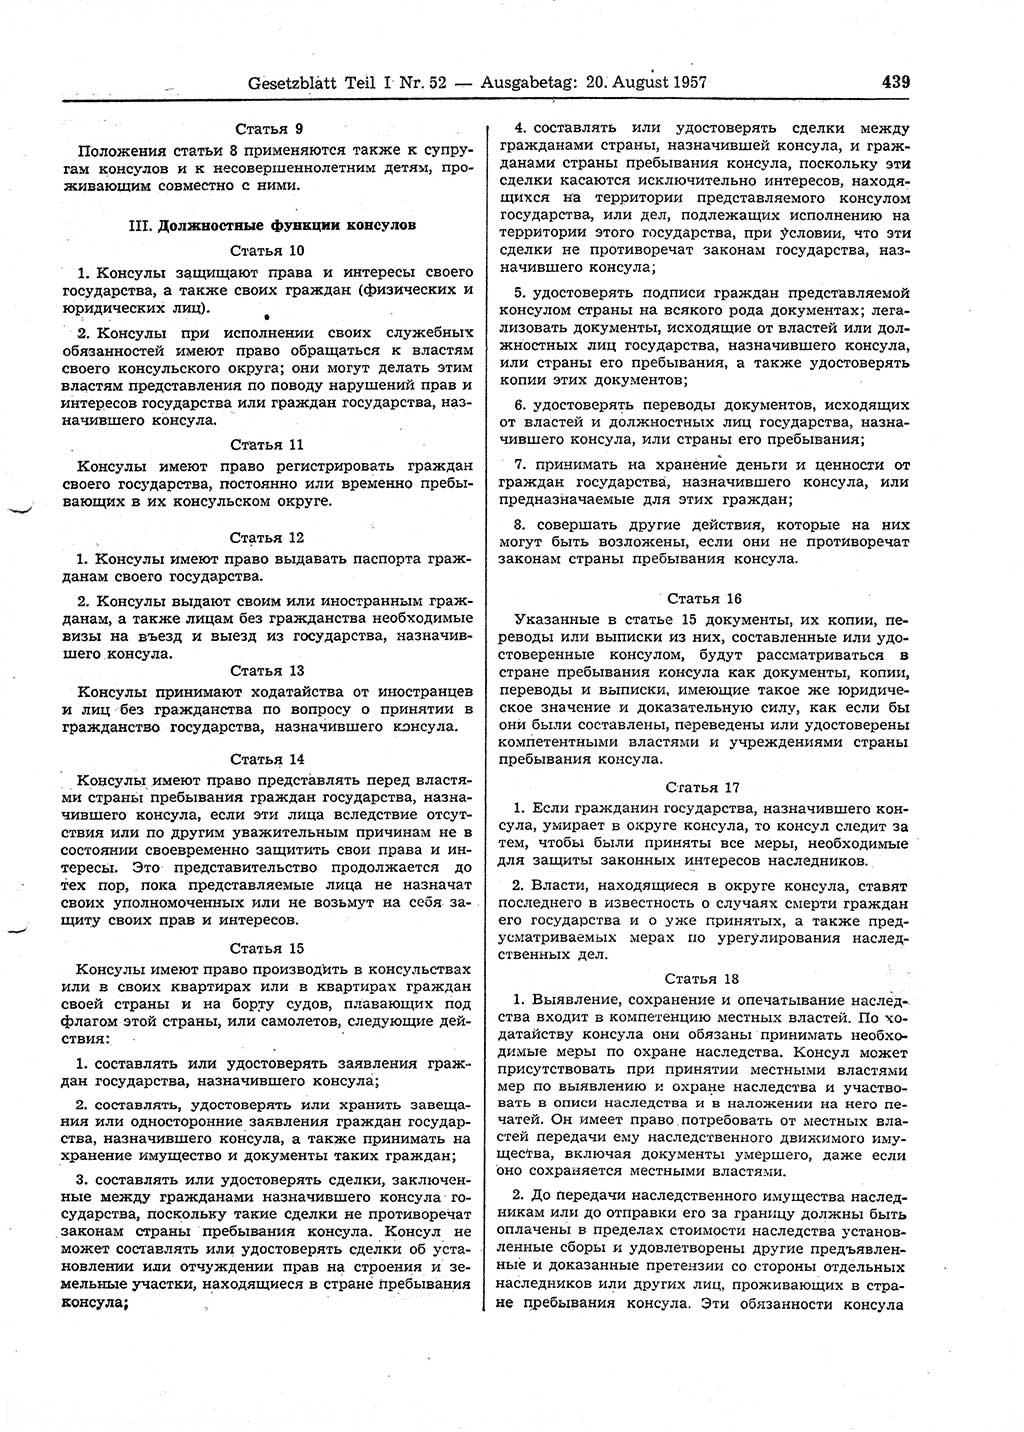 Gesetzblatt (GBl.) der Deutschen Demokratischen Republik (DDR) Teil Ⅰ 1957, Seite 439 (GBl. DDR Ⅰ 1957, S. 439)